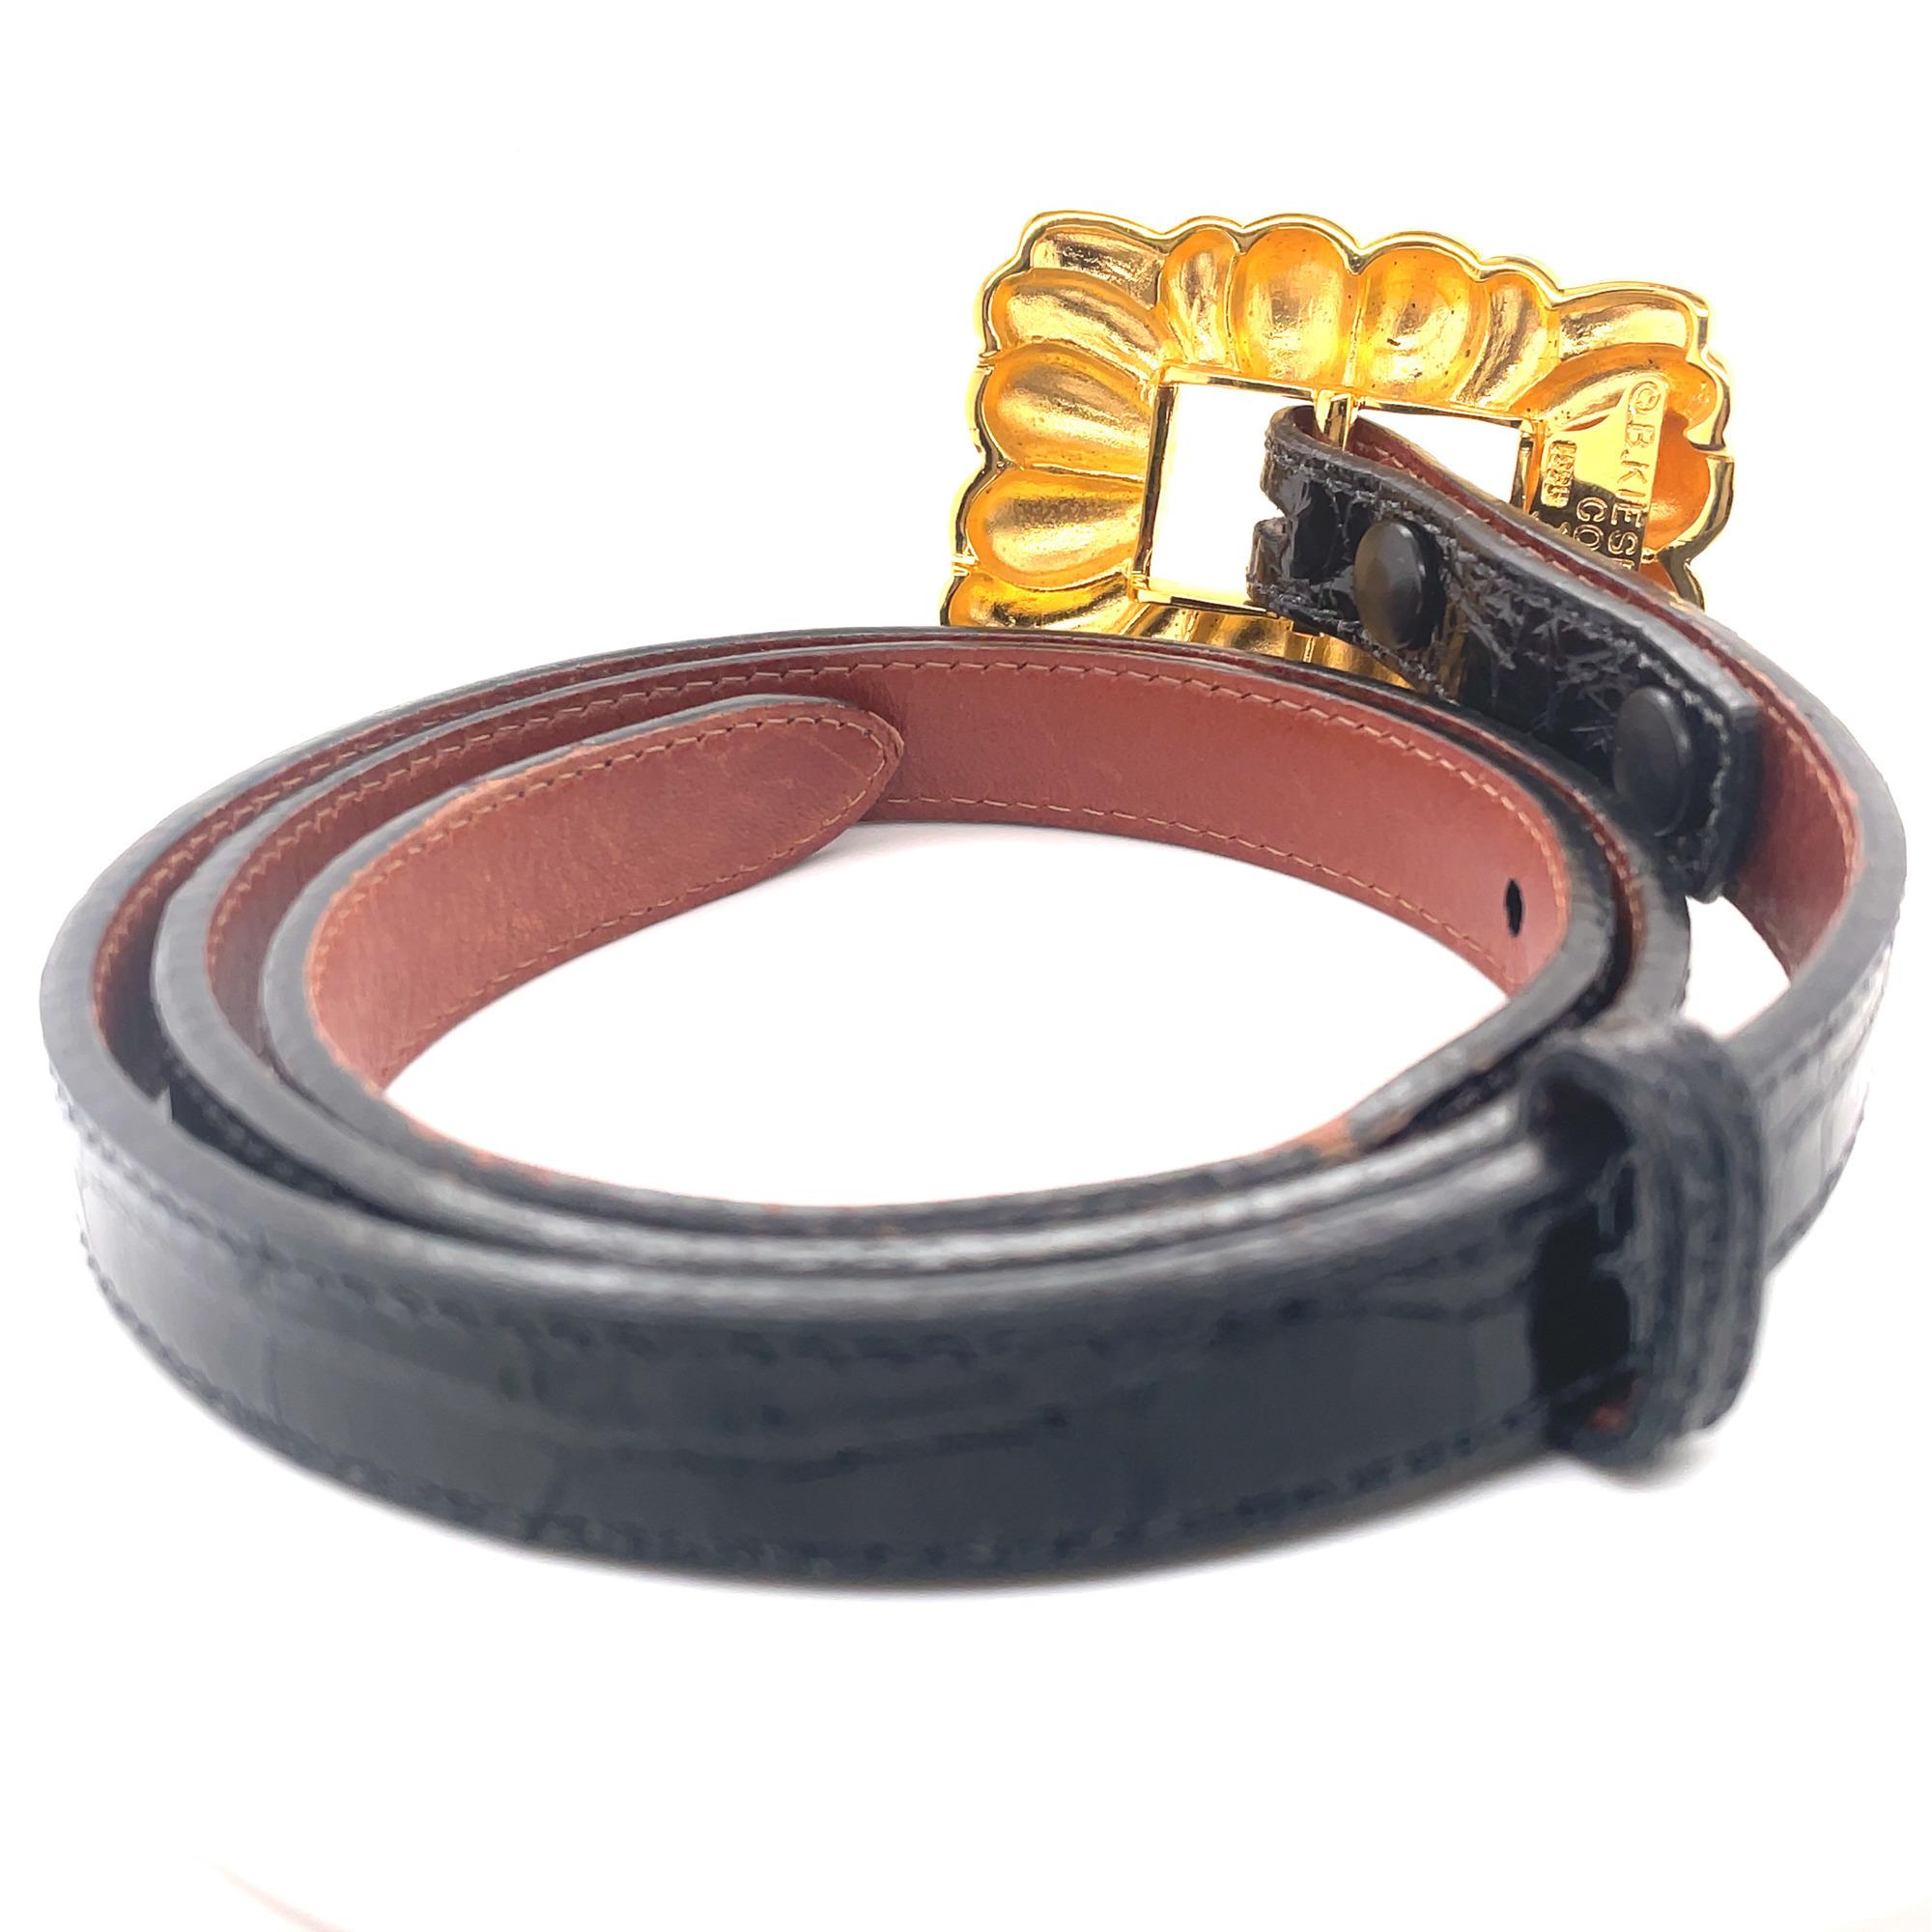 Beige Barry Kieselstein Cord Wide Buckle Black Leather Slim Belt Gold Tone